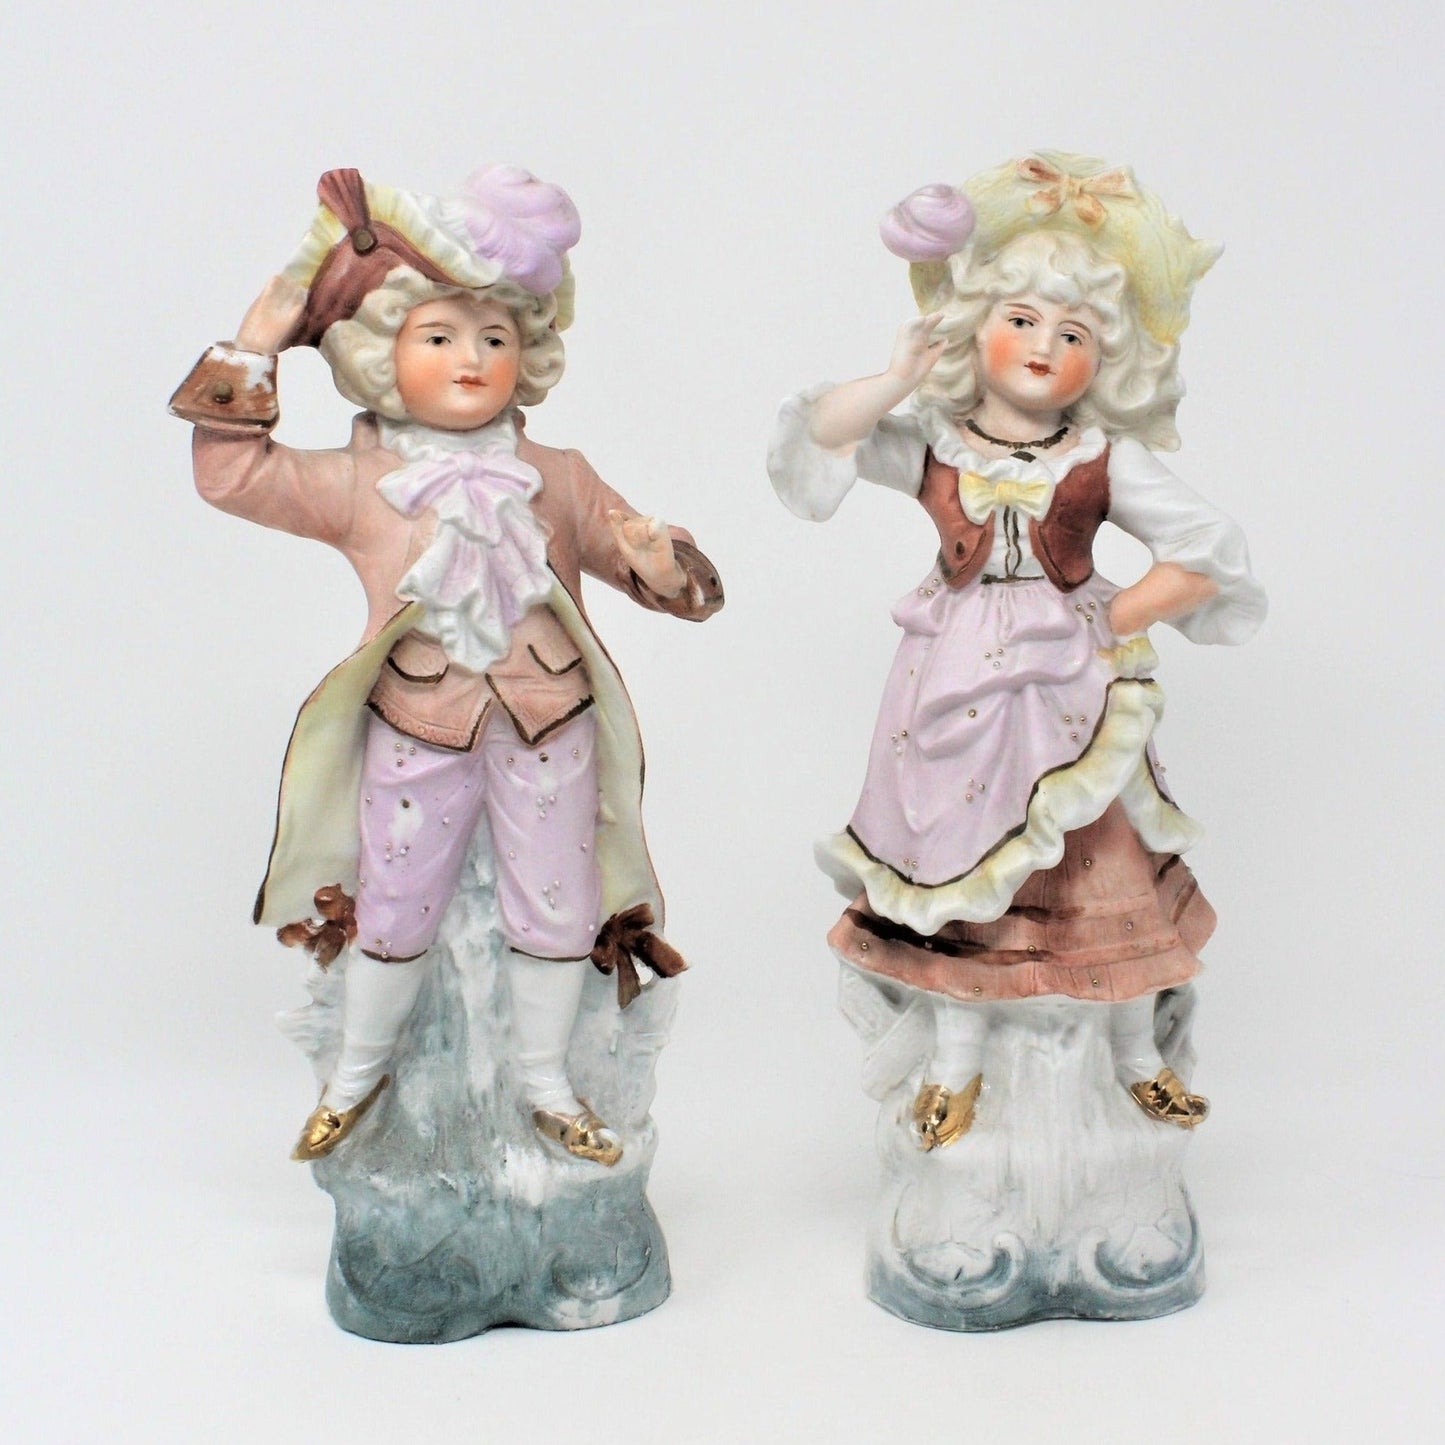 Figurine, Unger Schneider & Co, Victorian Children, Germany, Antique